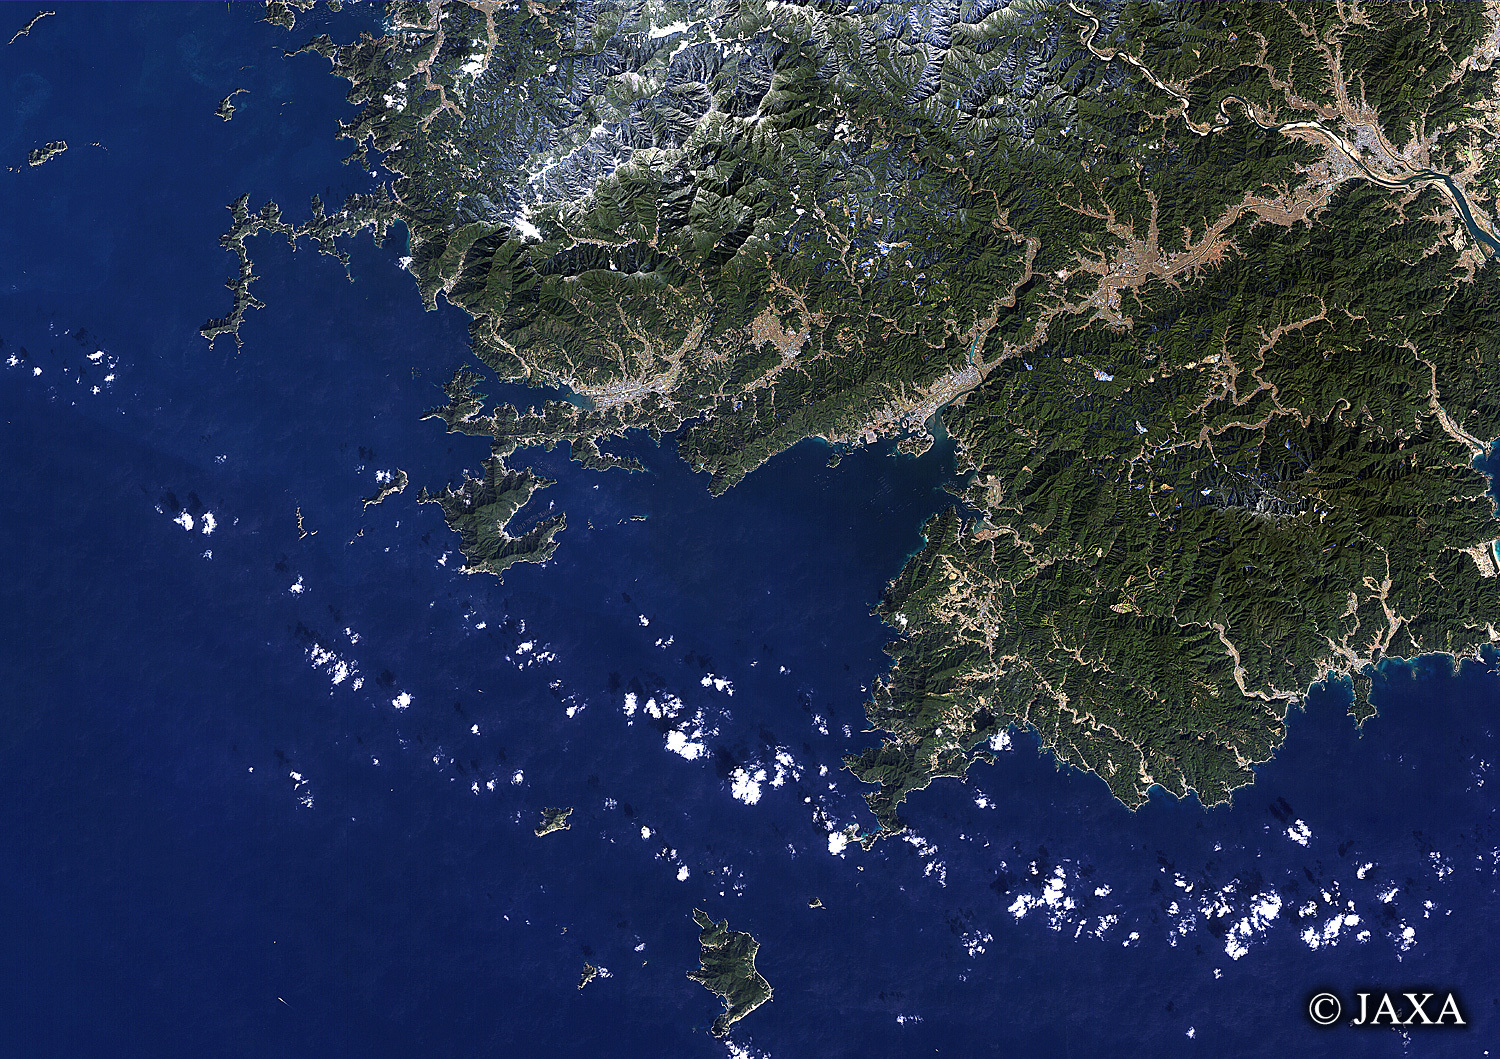 だいちから見た日本の都市 宿毛湾:衛星画像